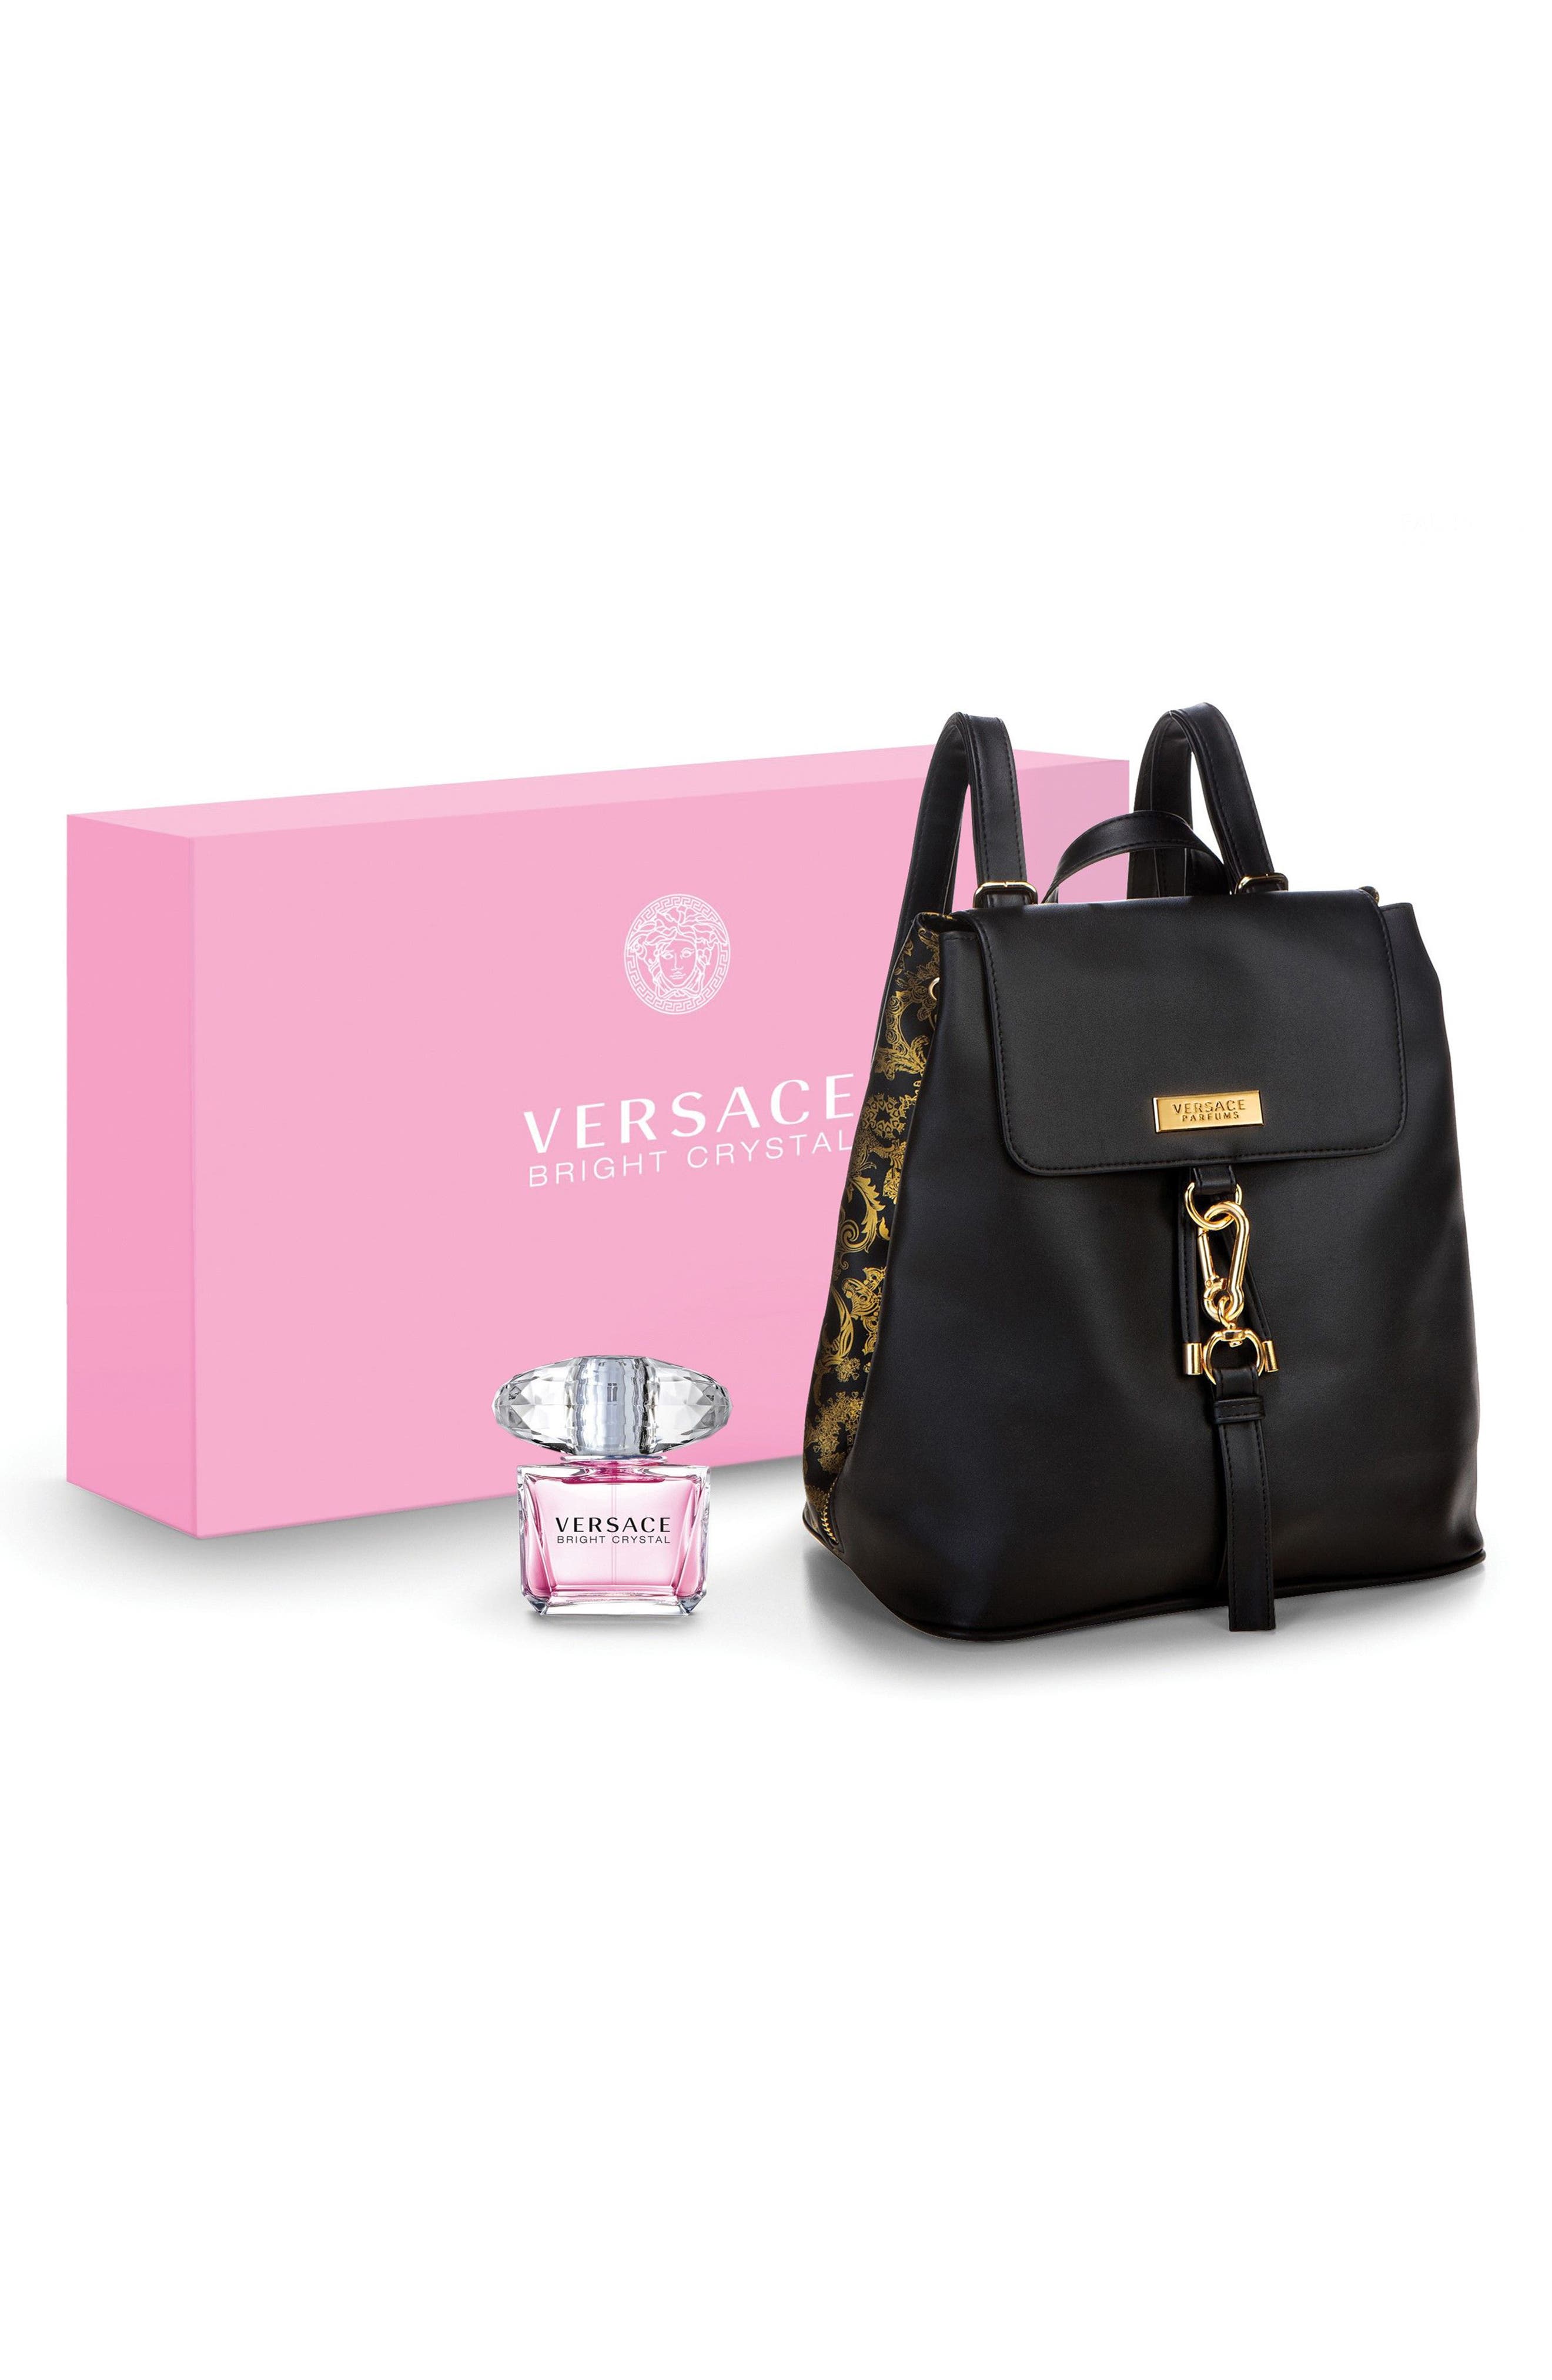 versace perfume and bag